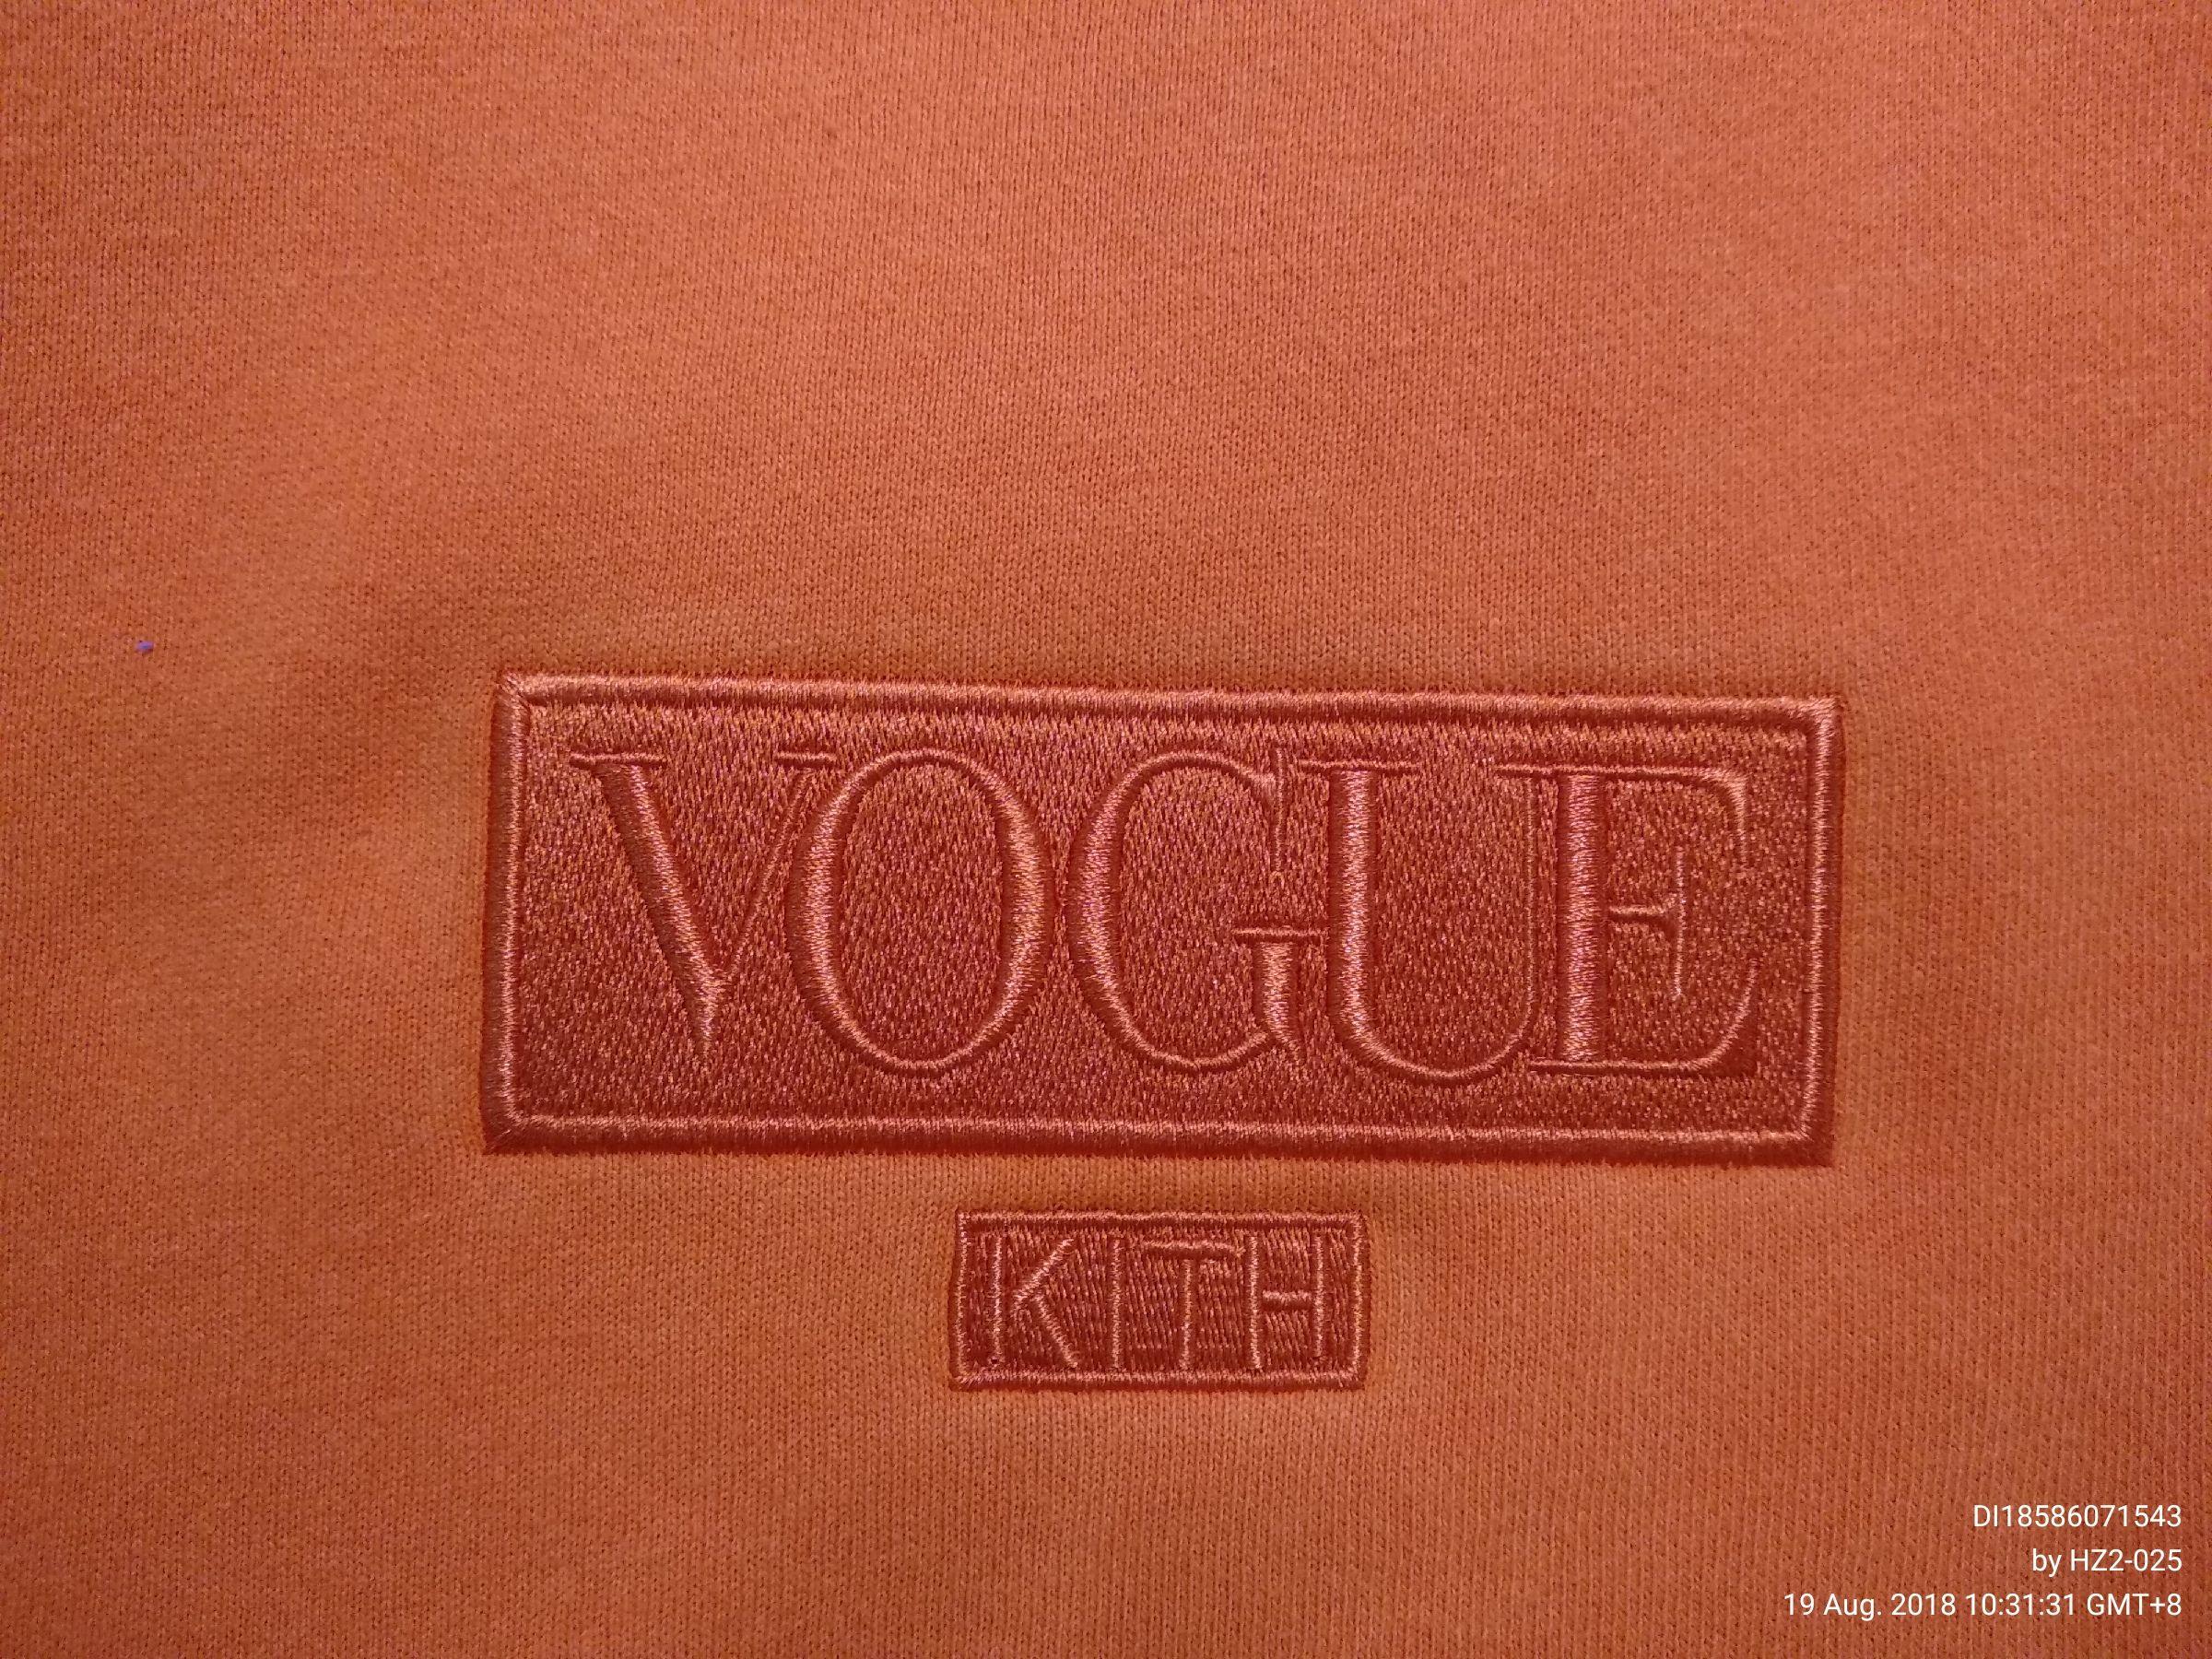 Kith Logo - QC] This Vogue Kith logo please 